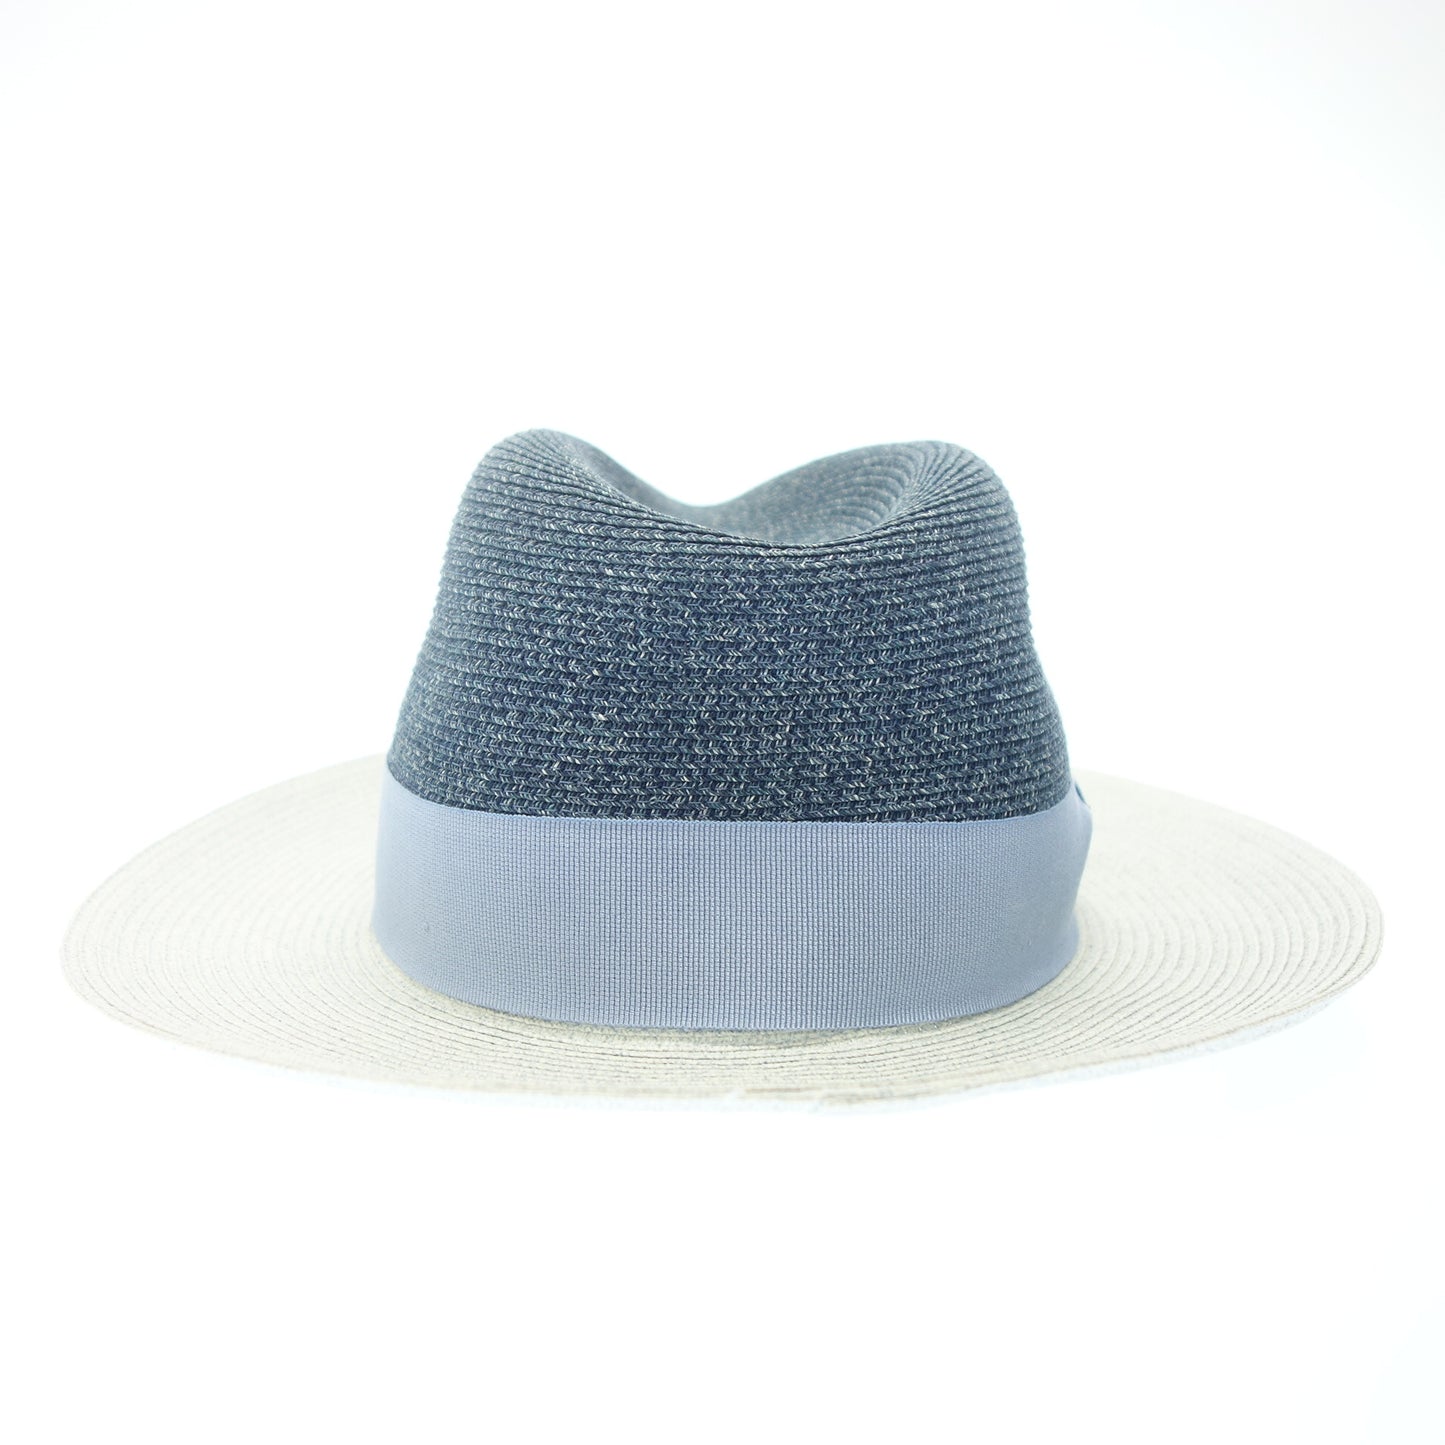 Very good condition ◆ Emporio Armani hat straw blue 57 EMPORIO ARMANI [AFI23] 